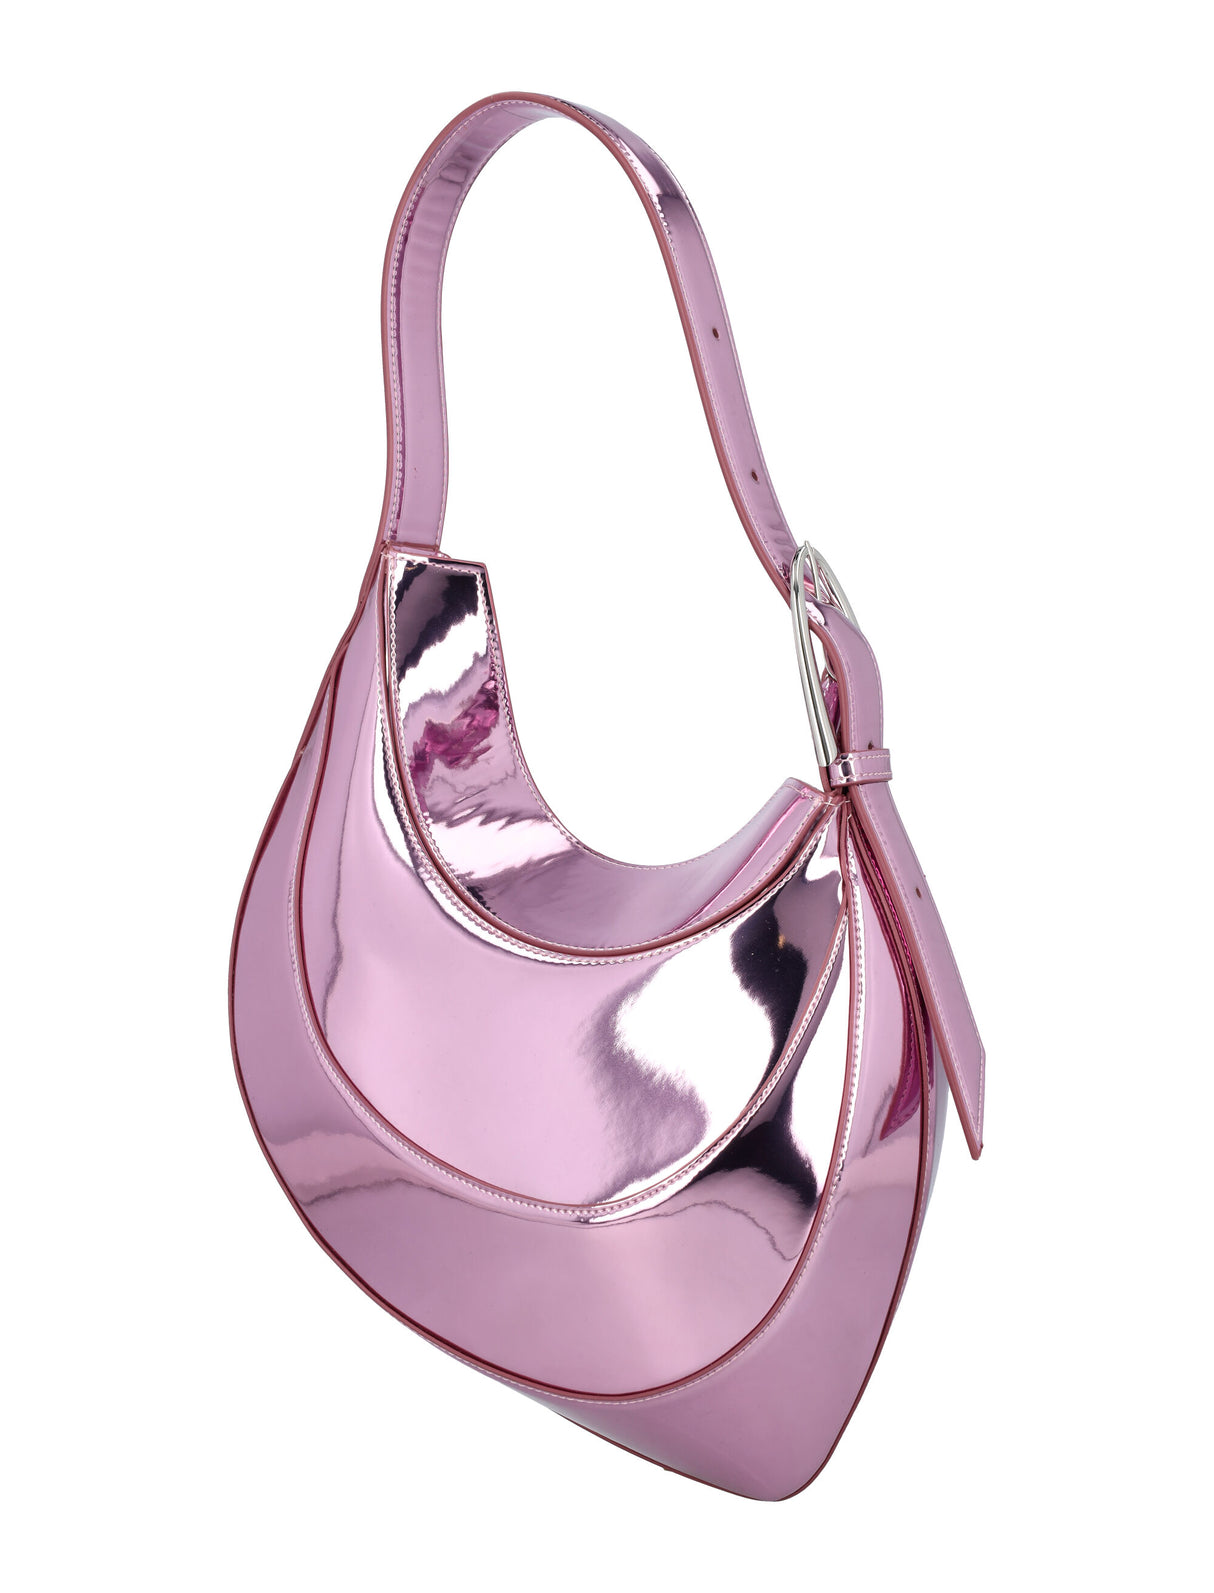 流行曲線造型手提包－粉紅適合女性